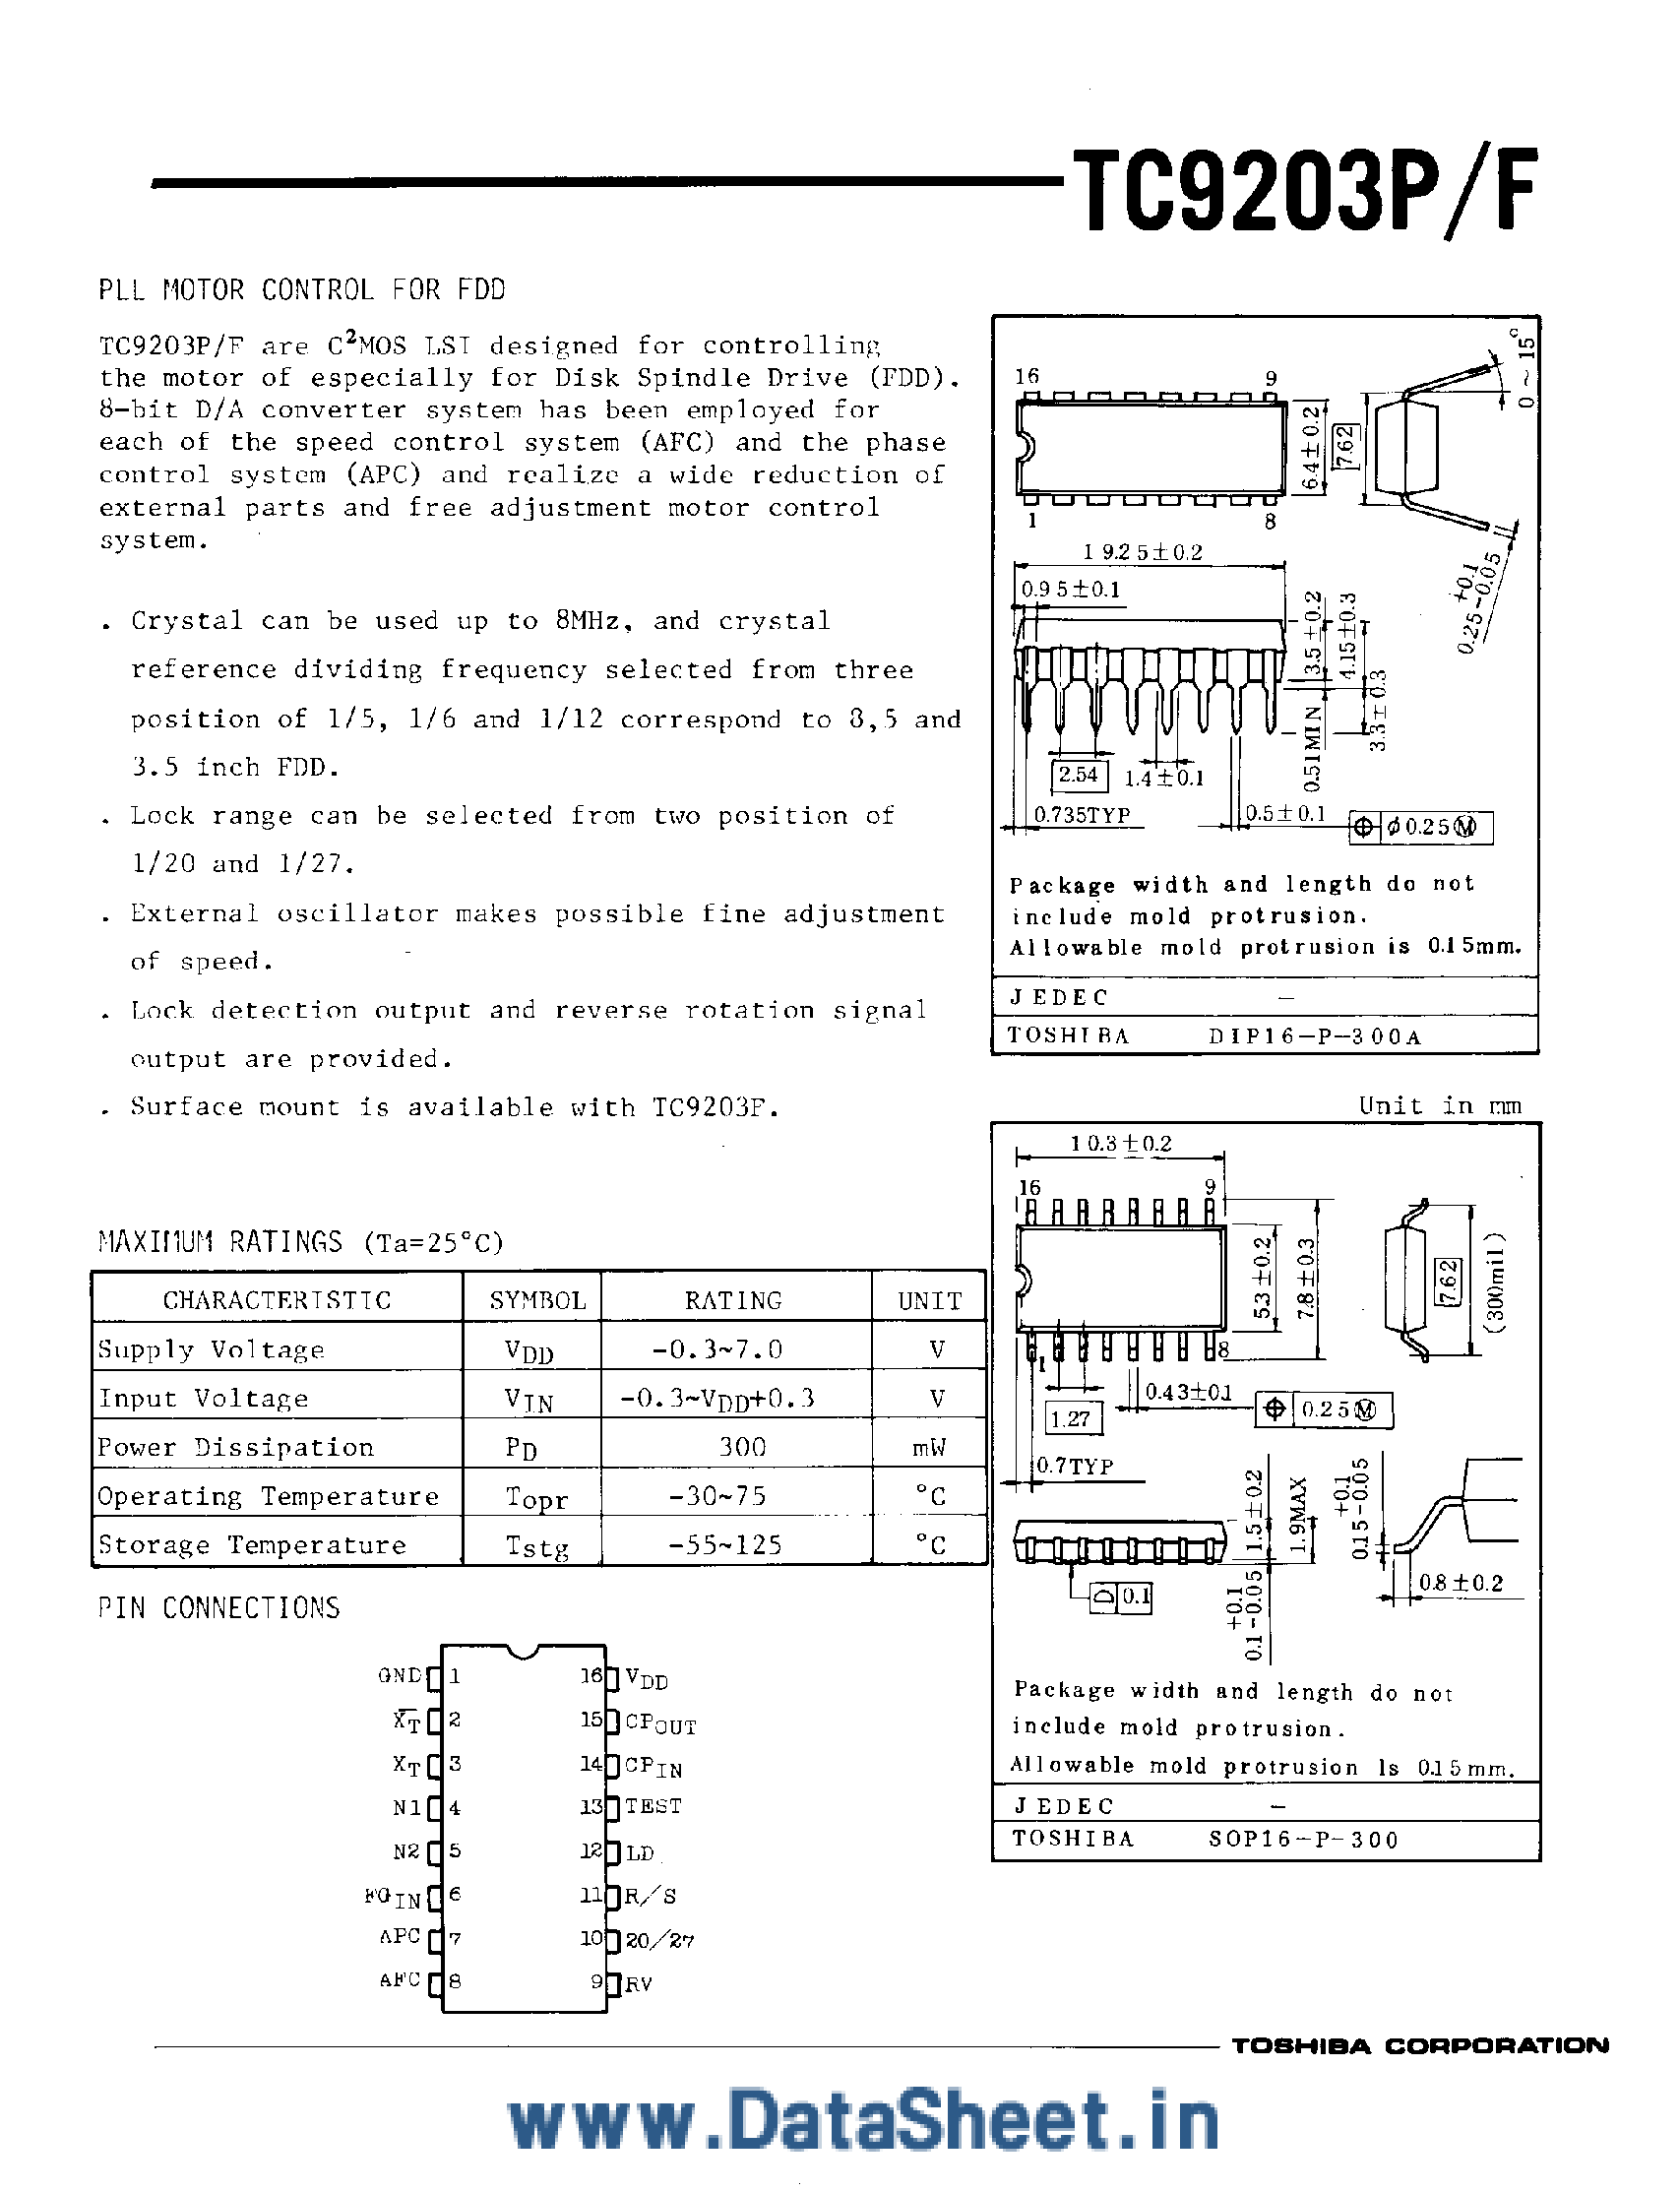 Даташит TC9203 - PLL Motor Control for FDD страница 1